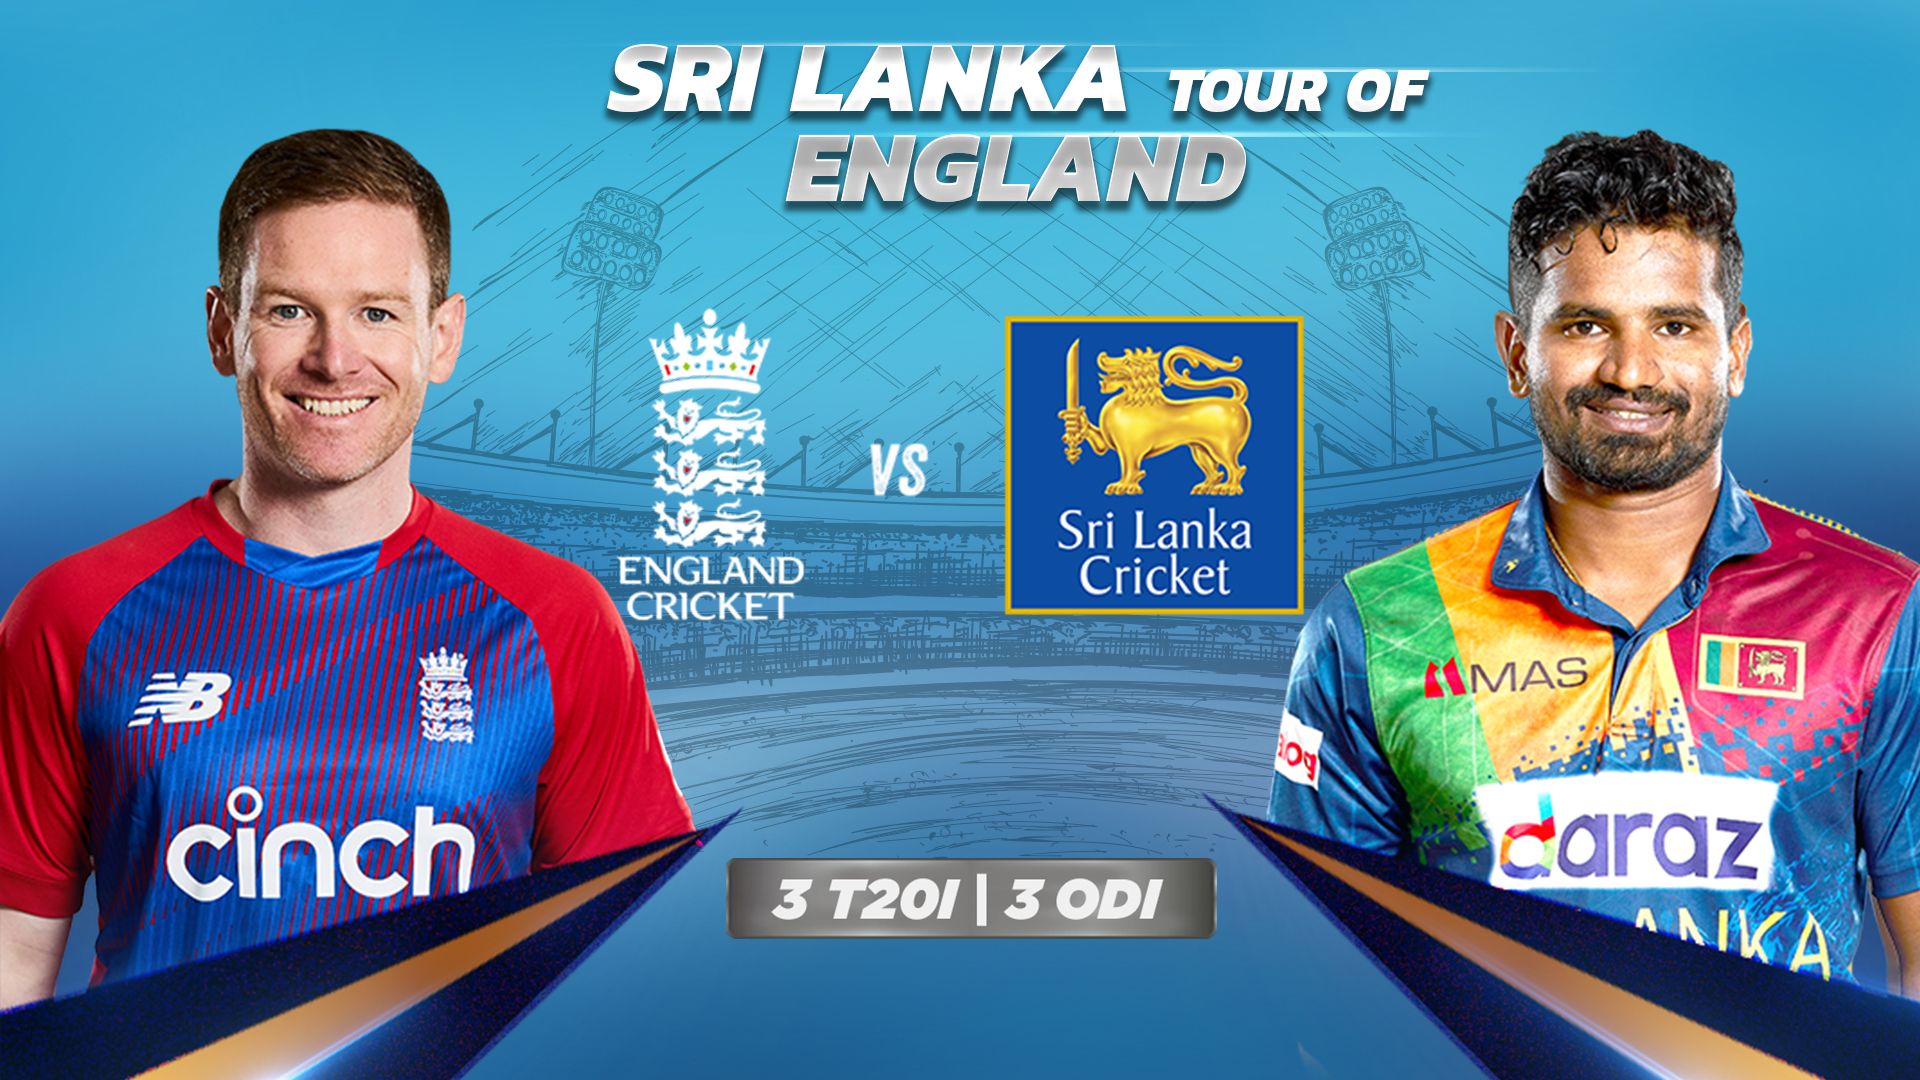 Sri Lanka Tour of England 2021